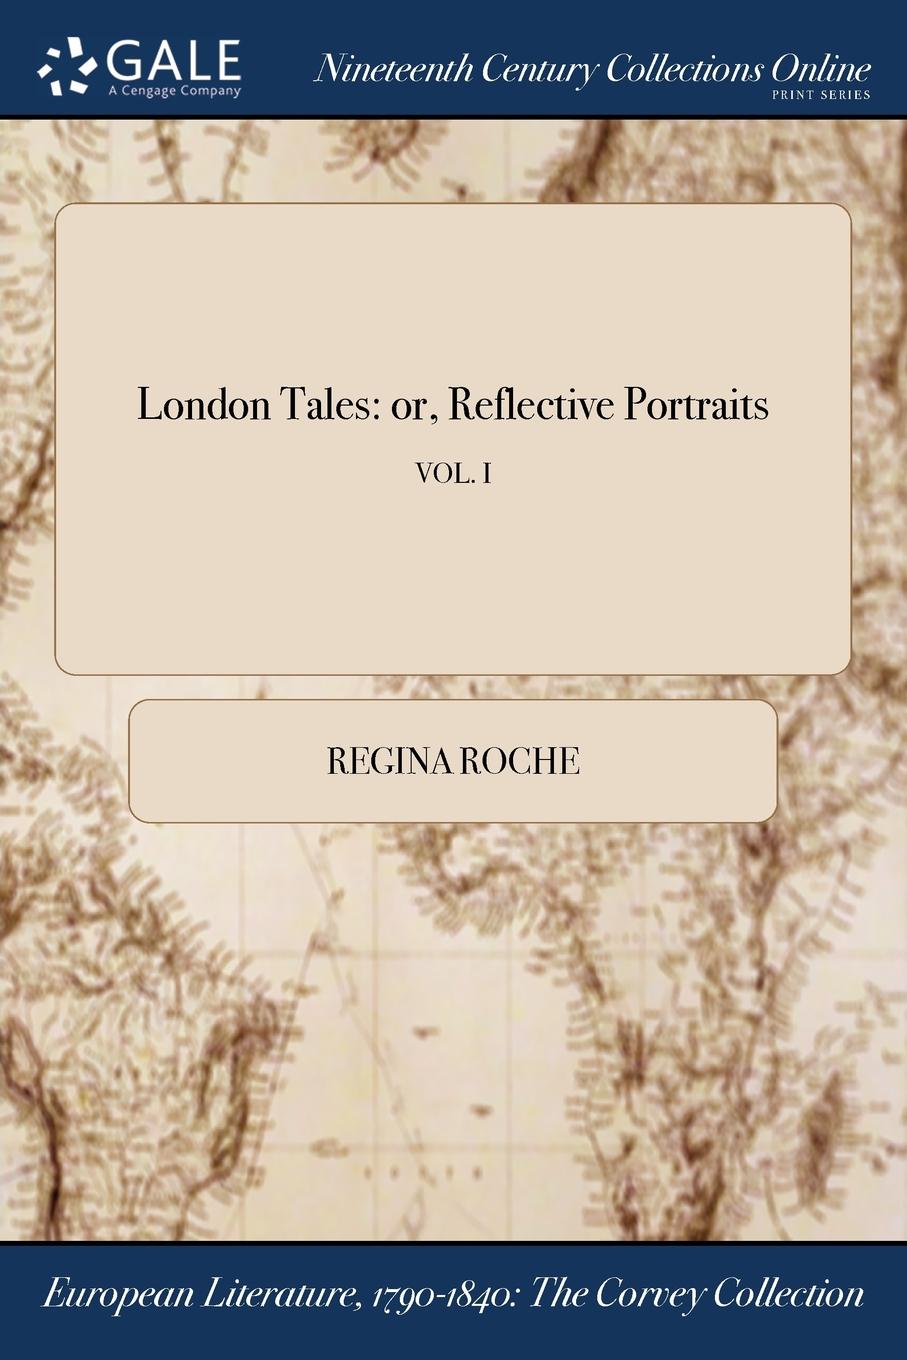 London Tales. or, Reflective Portraits; VOL. I